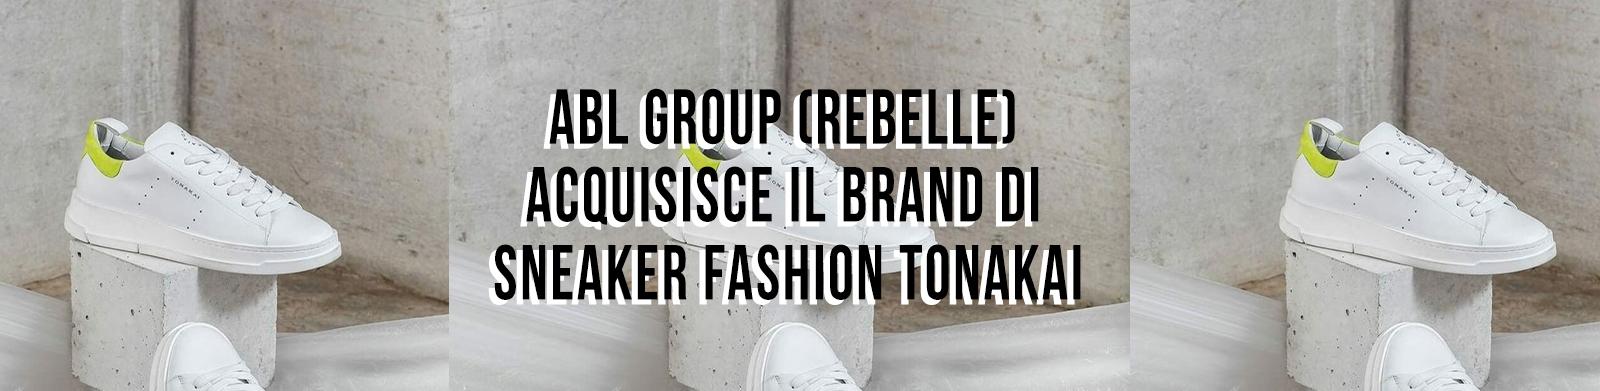 ABL Group (Rebelle) acquisisce il brand di sneaker fashion Tonakai